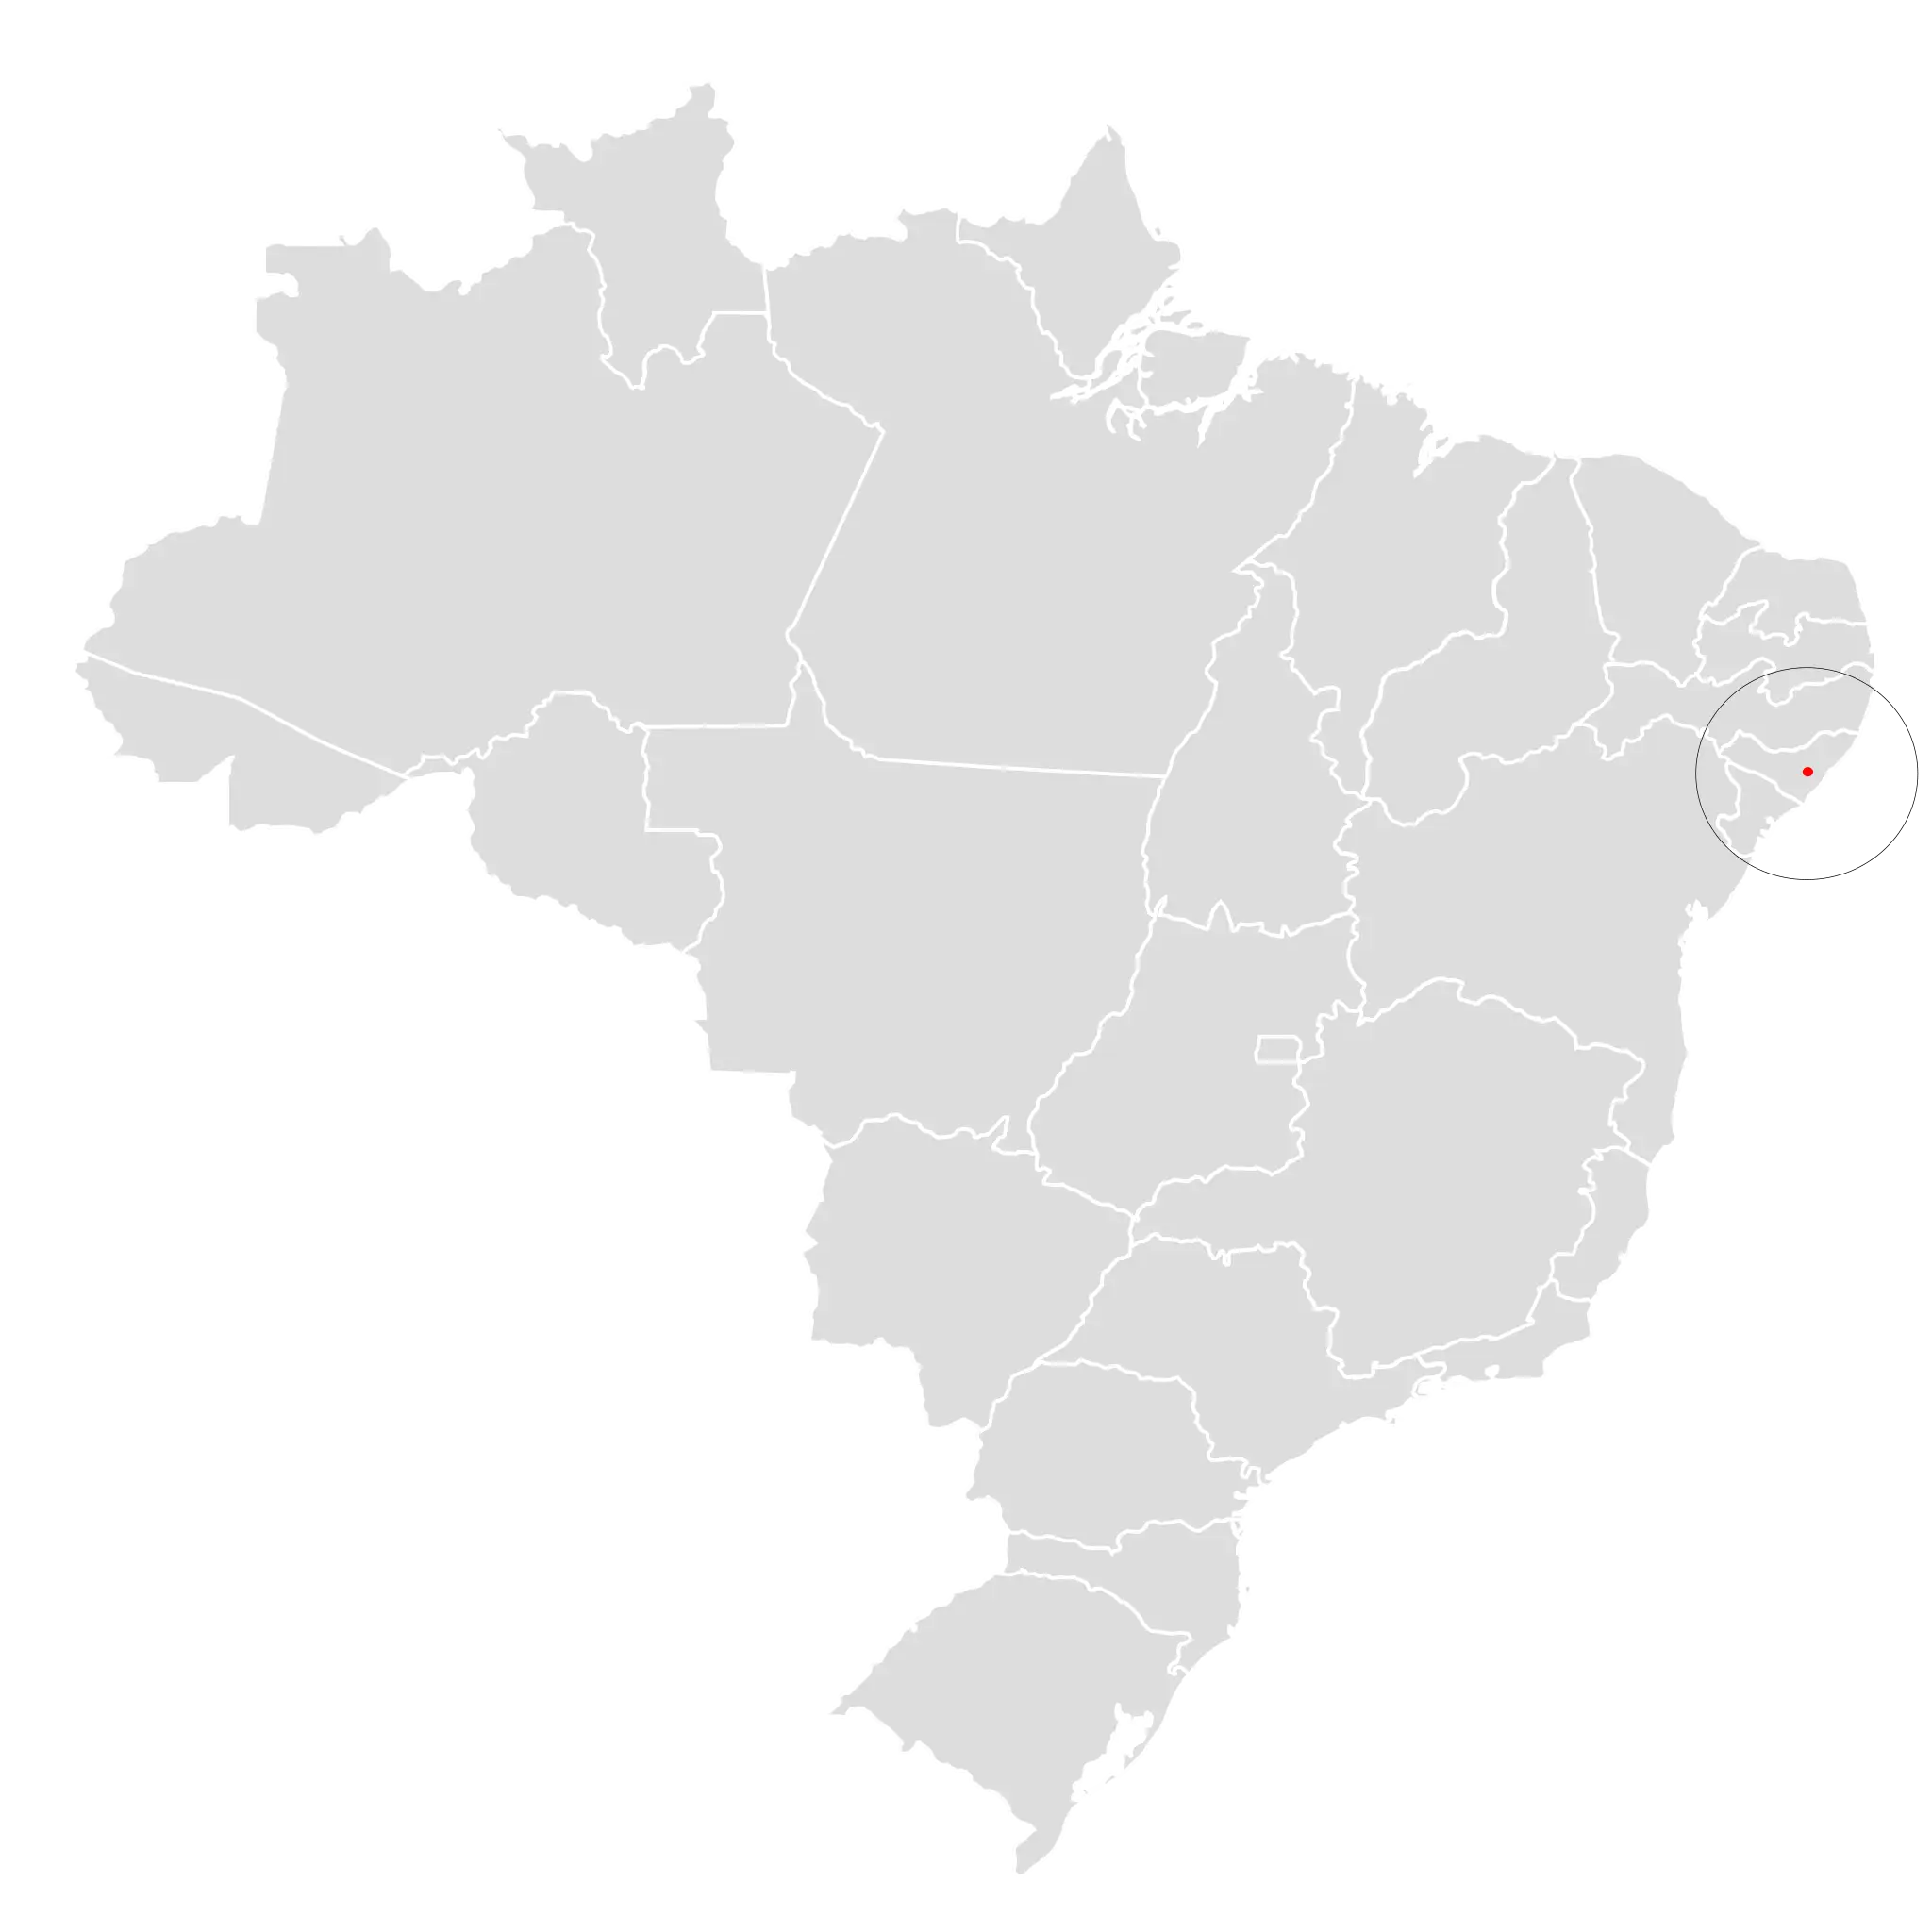 Alagoas curassow habitat map